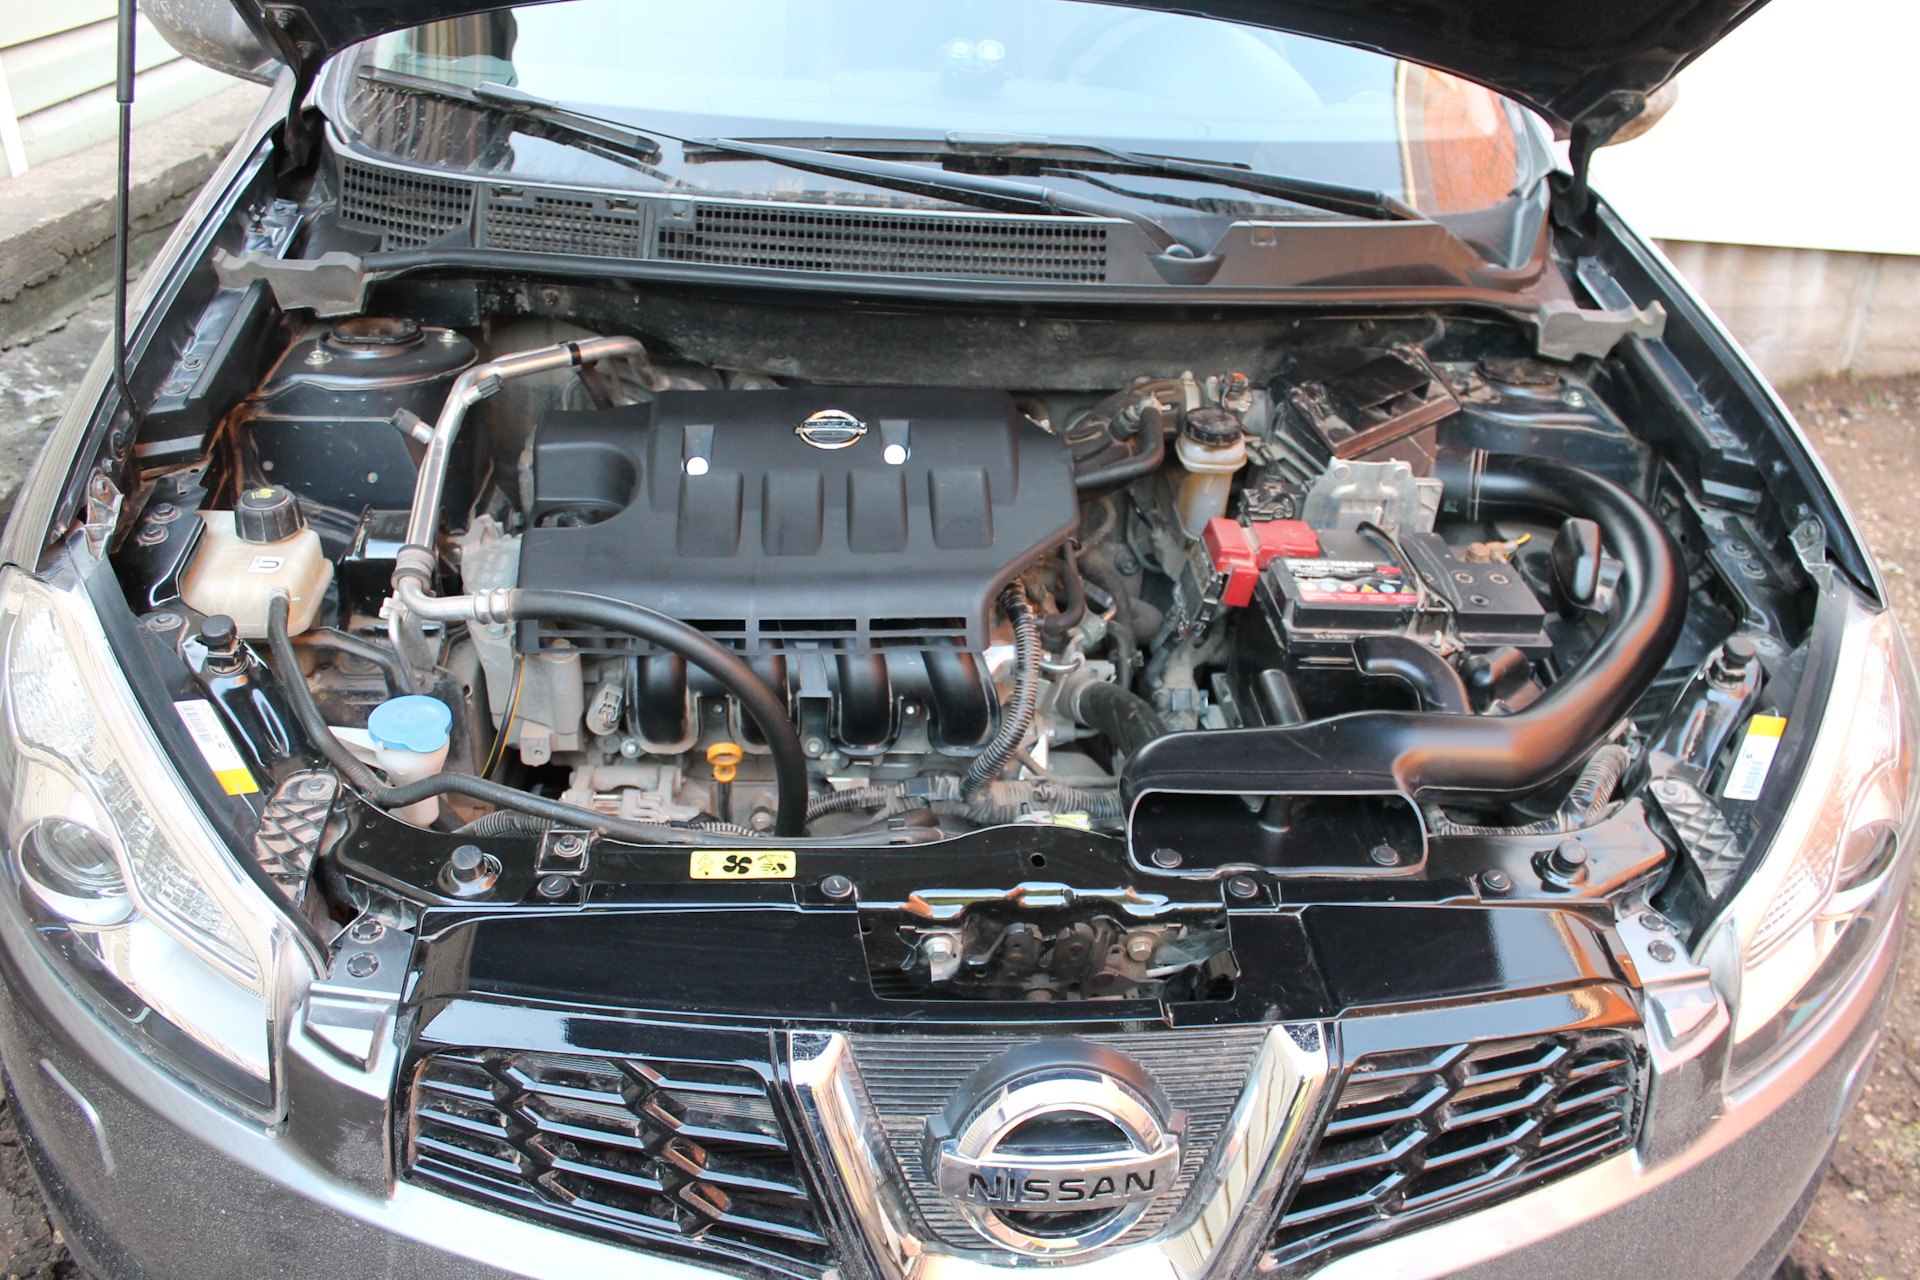 Ниссан кашкай j11 какой двигатель. Nissan Qashqai 1.6 2012 подкапотное. Nissan Qashqai 2013 под капотом. Двигатель Ниссан Кашкай 1.6. Двигатель Ниссан Кашкай 2.0.